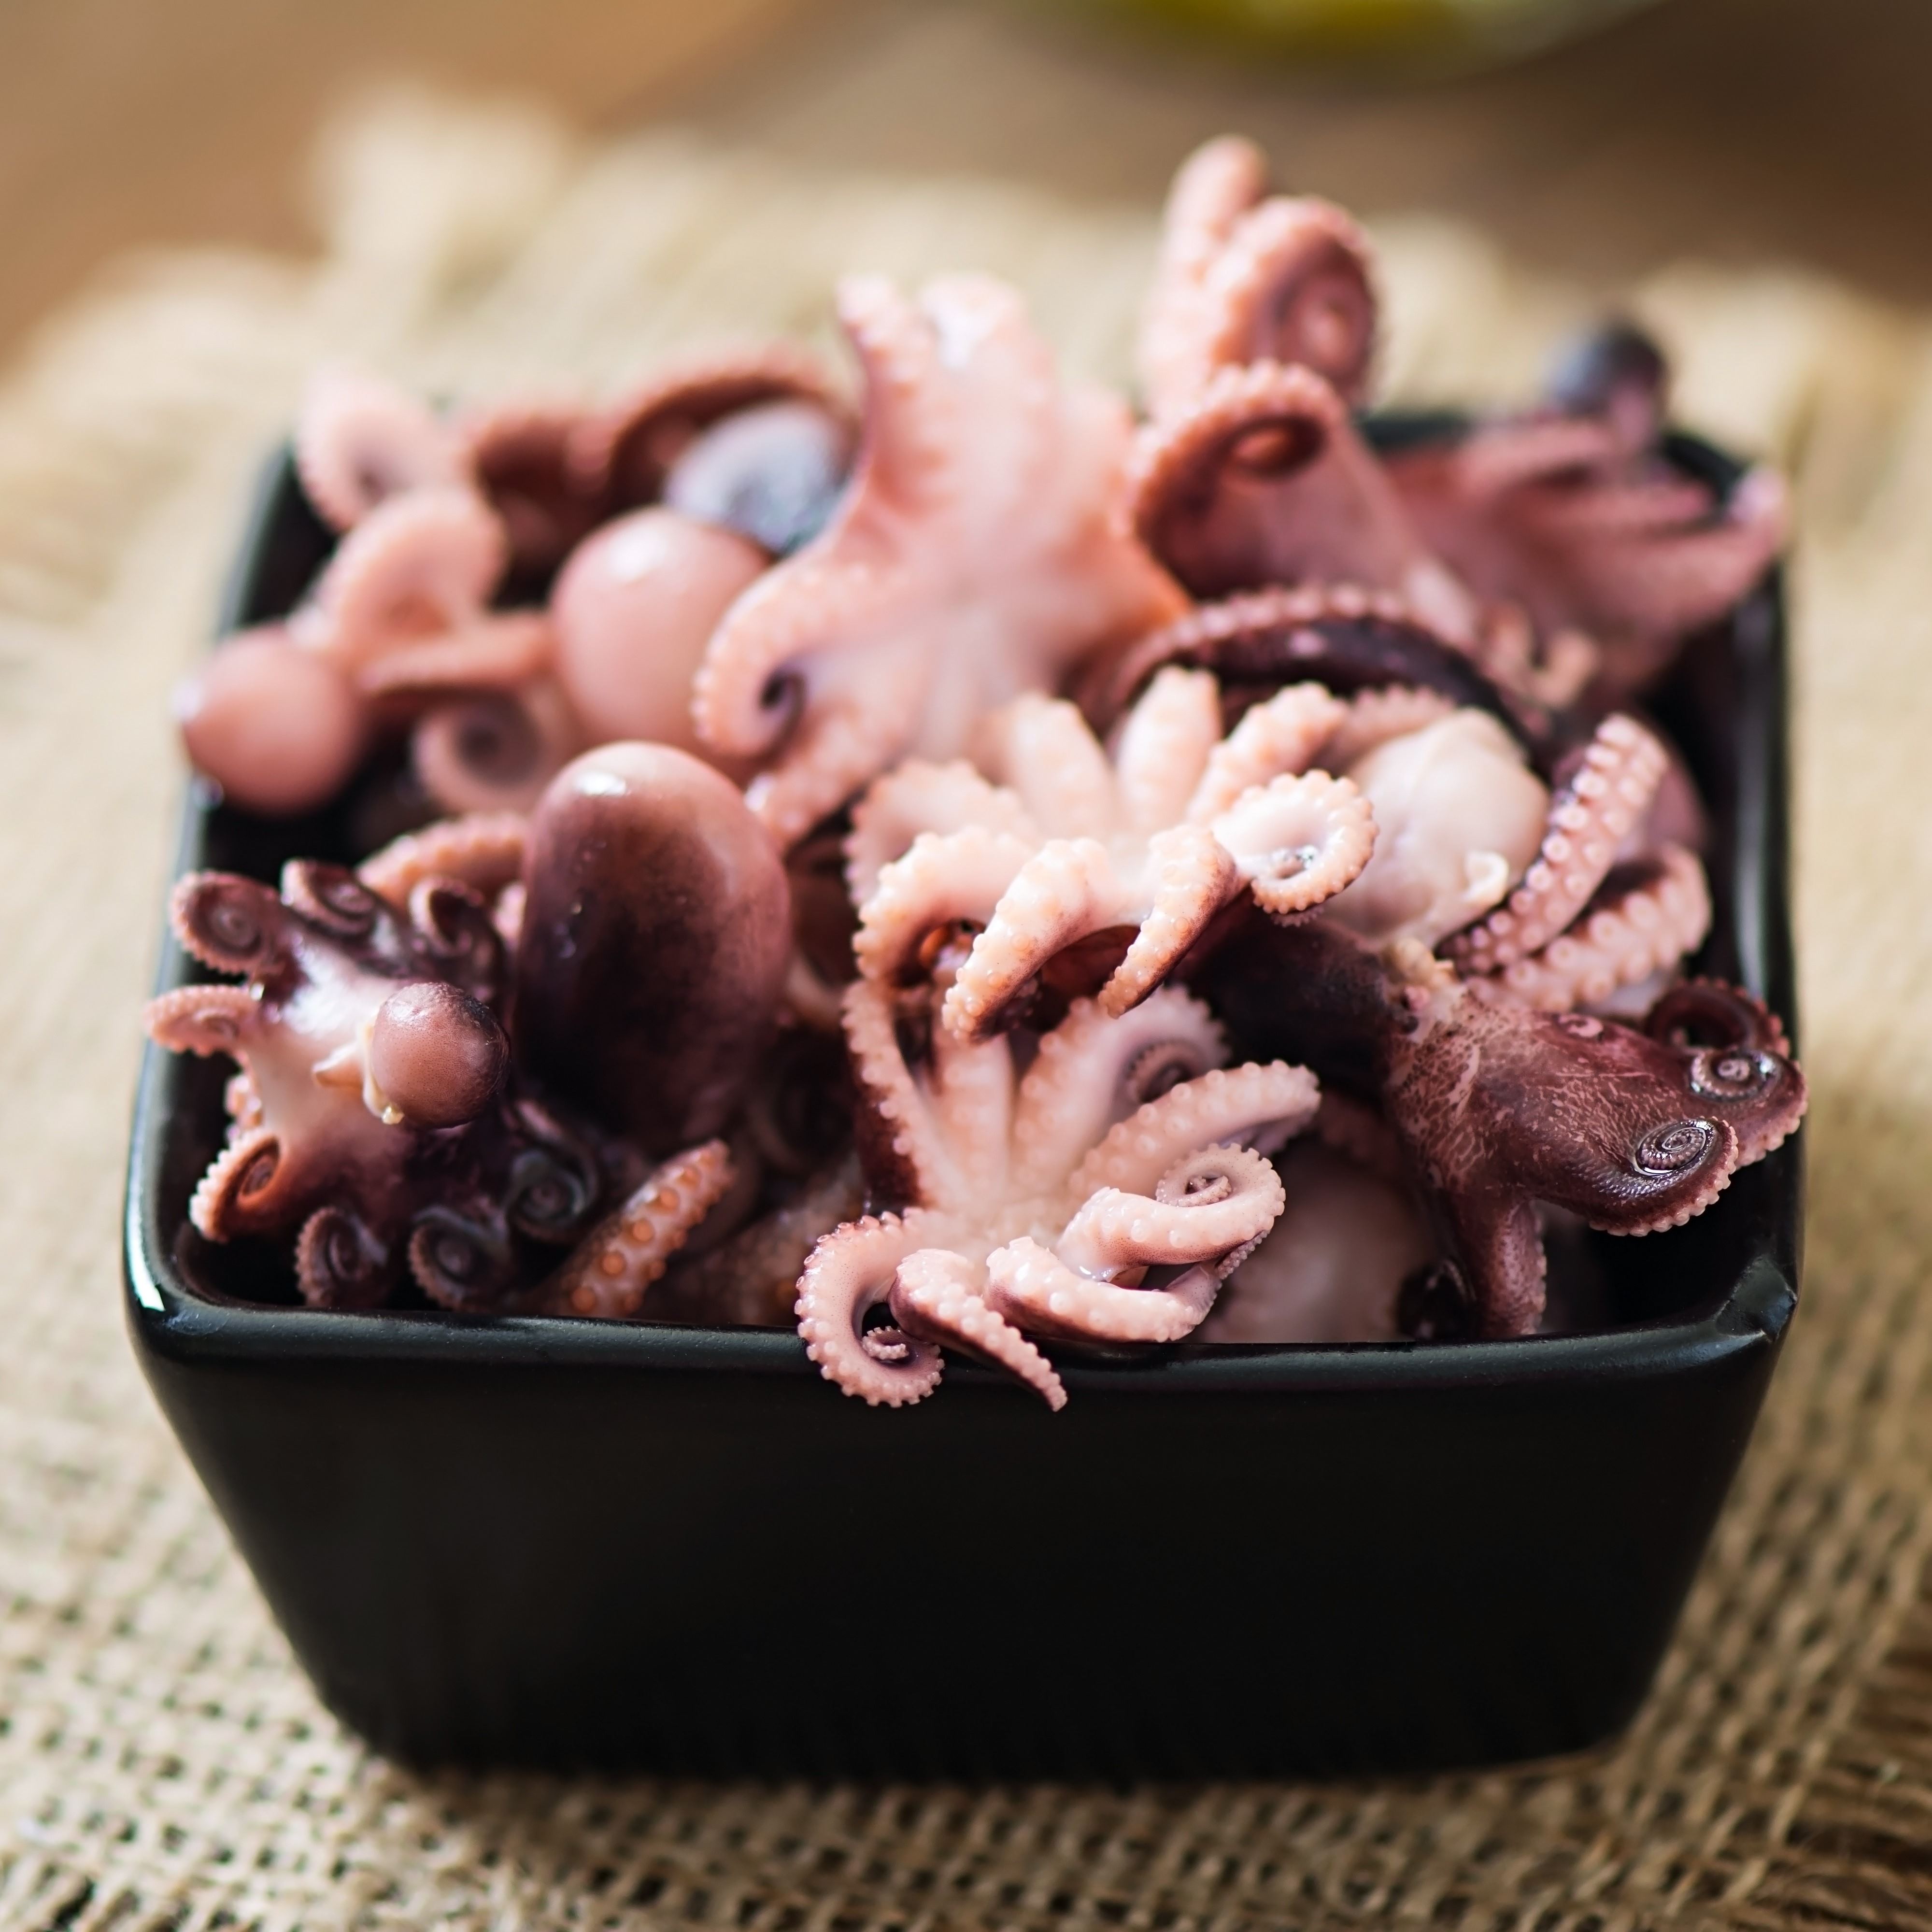 South Korea frozen octopus import in December 2022